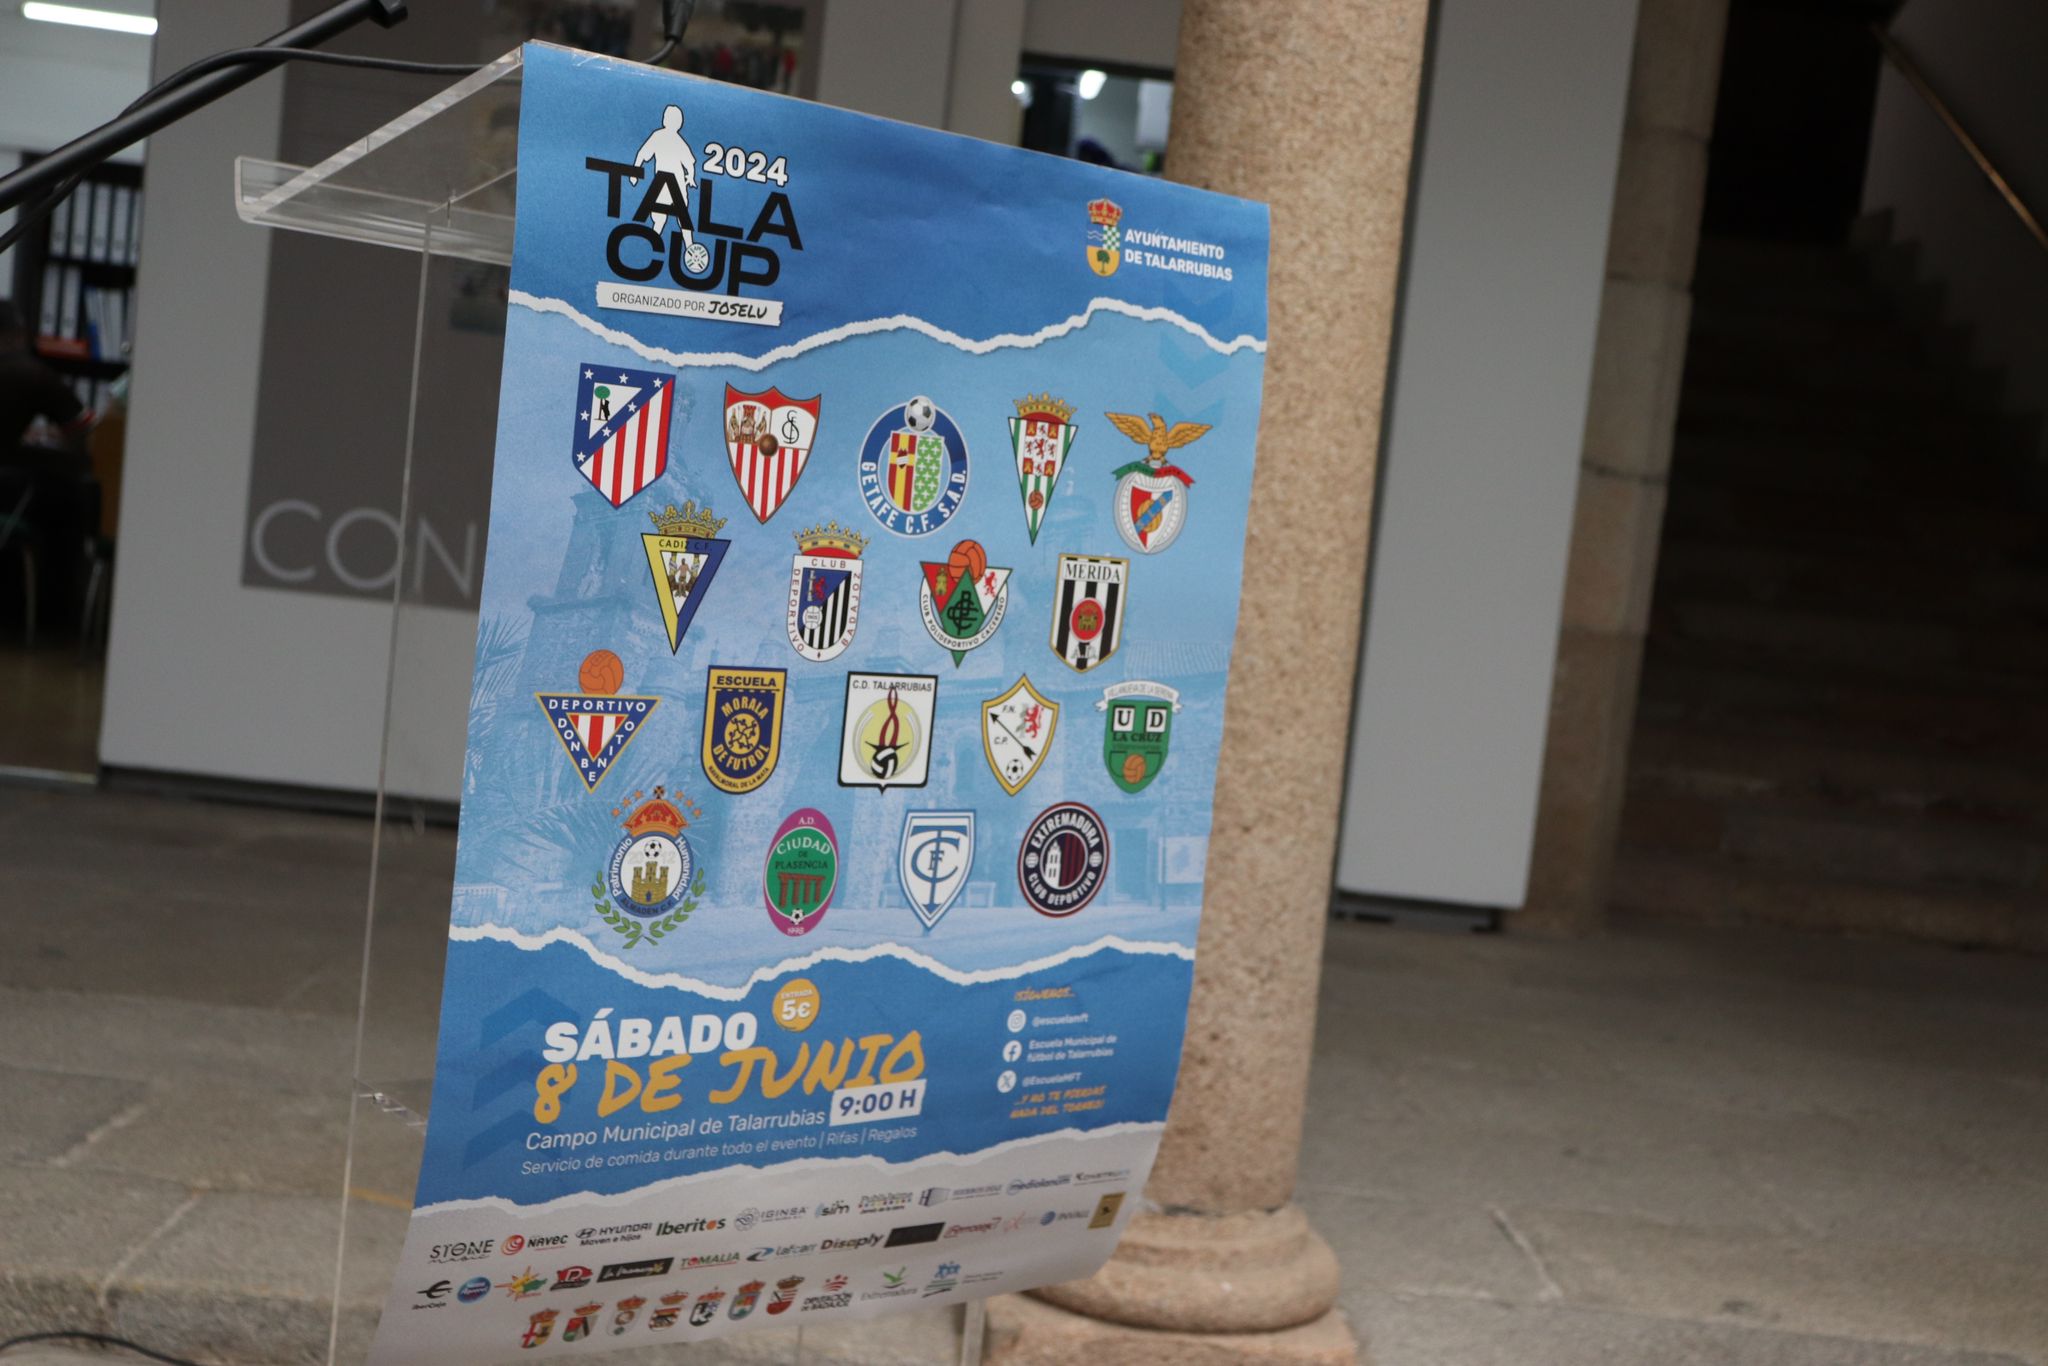 Image 2 of article Unos 800 menores participarán en Extremadura en la segunda edición del torneo de fútbol base Tala Cup